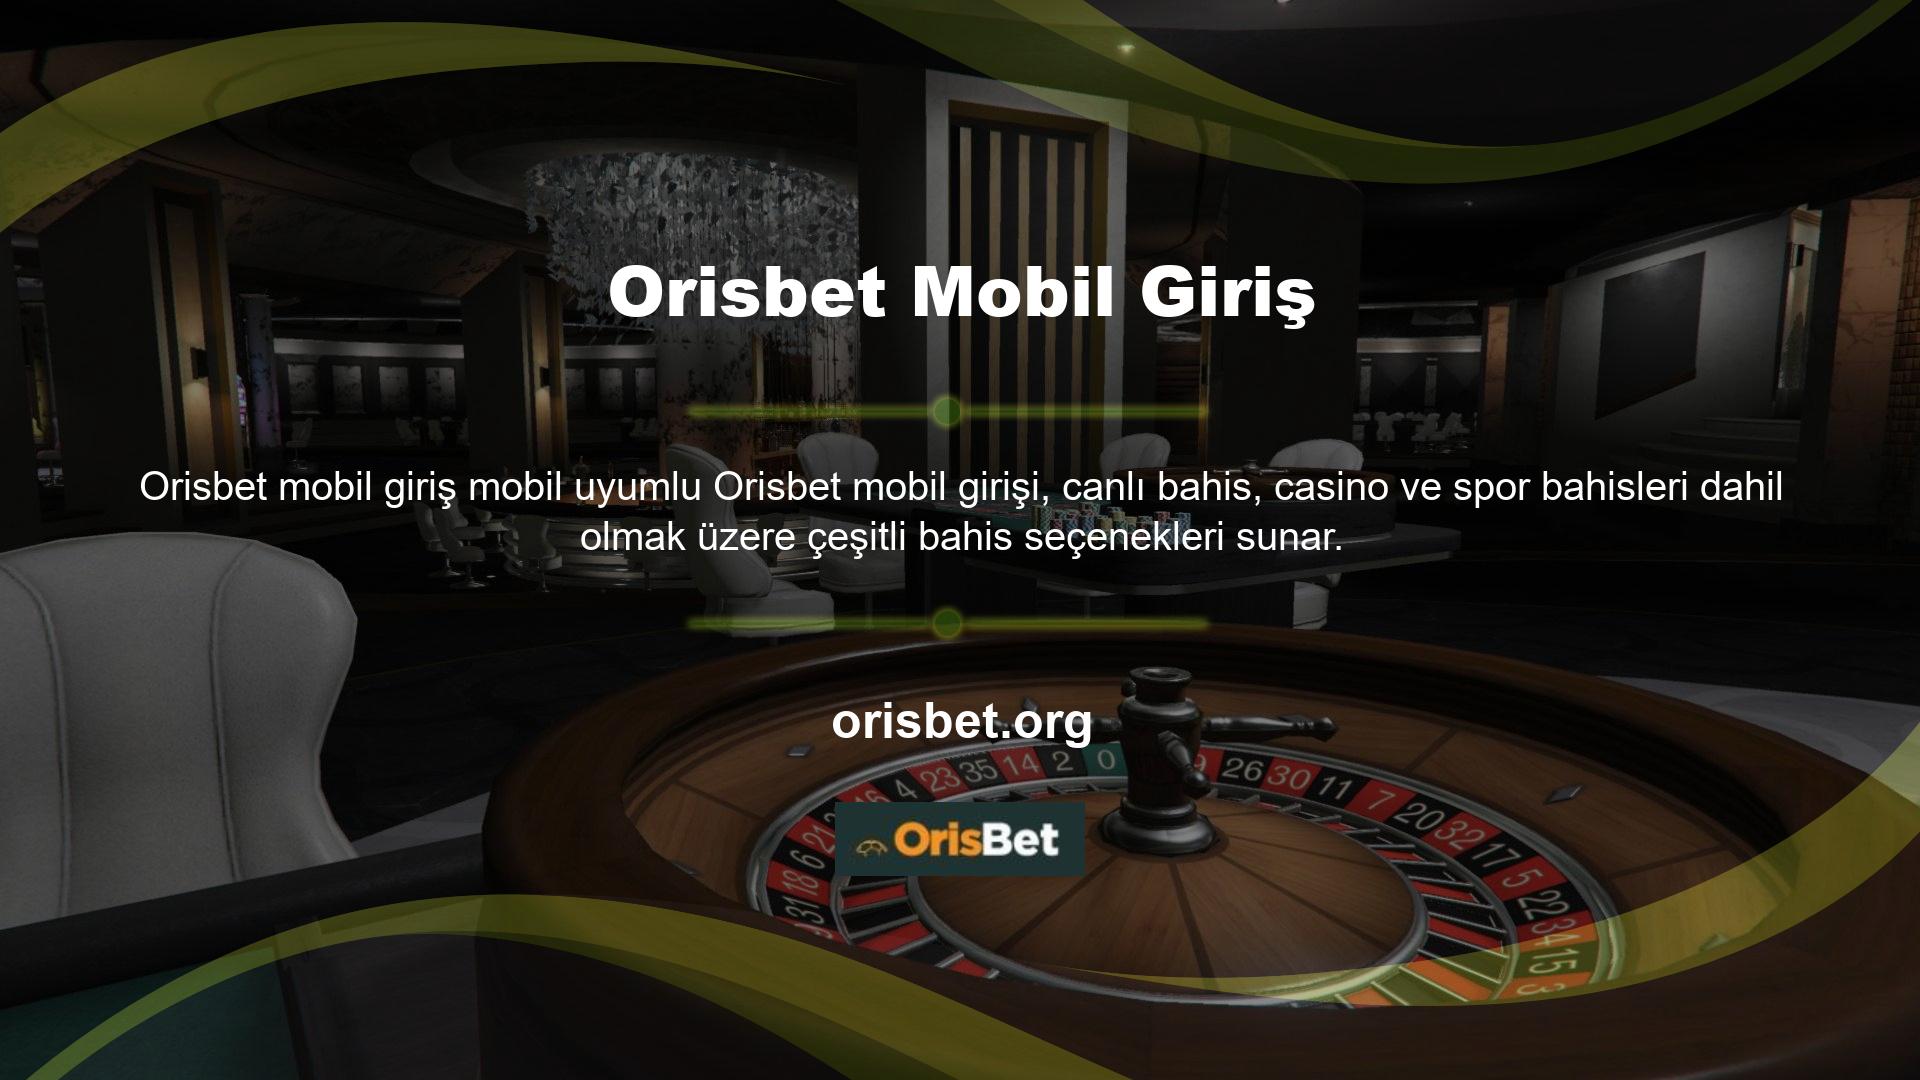 İstediğiniz zaman giriş yapmak için Orisbet sürekli mobil giriş hizmetini kullanabilirsiniz